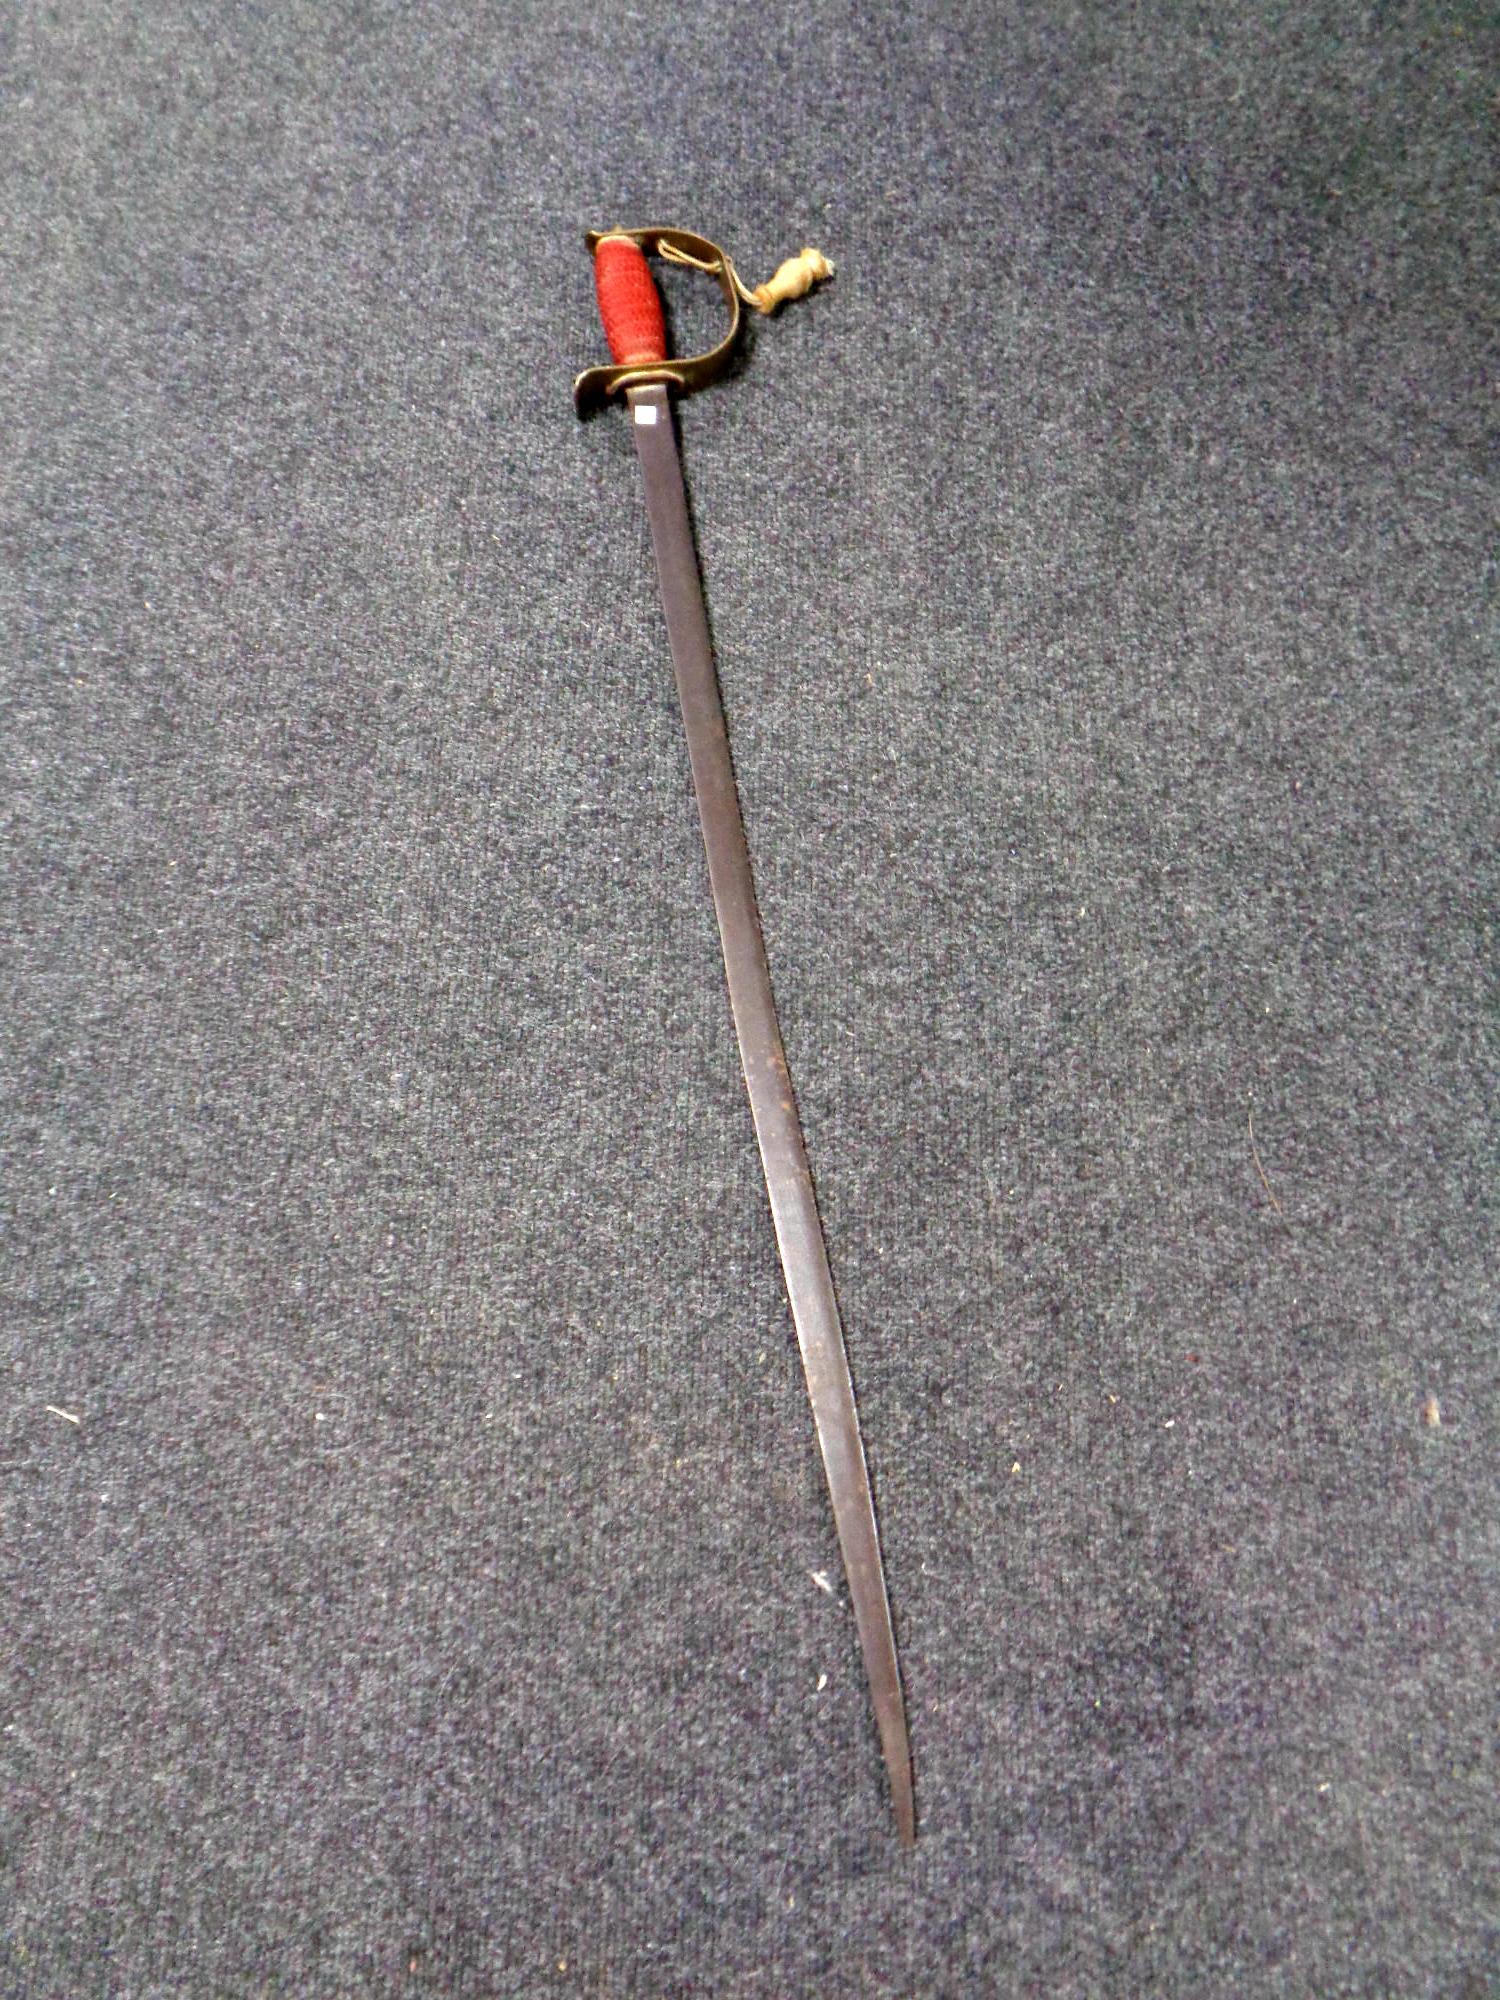 An antique brass handled sword